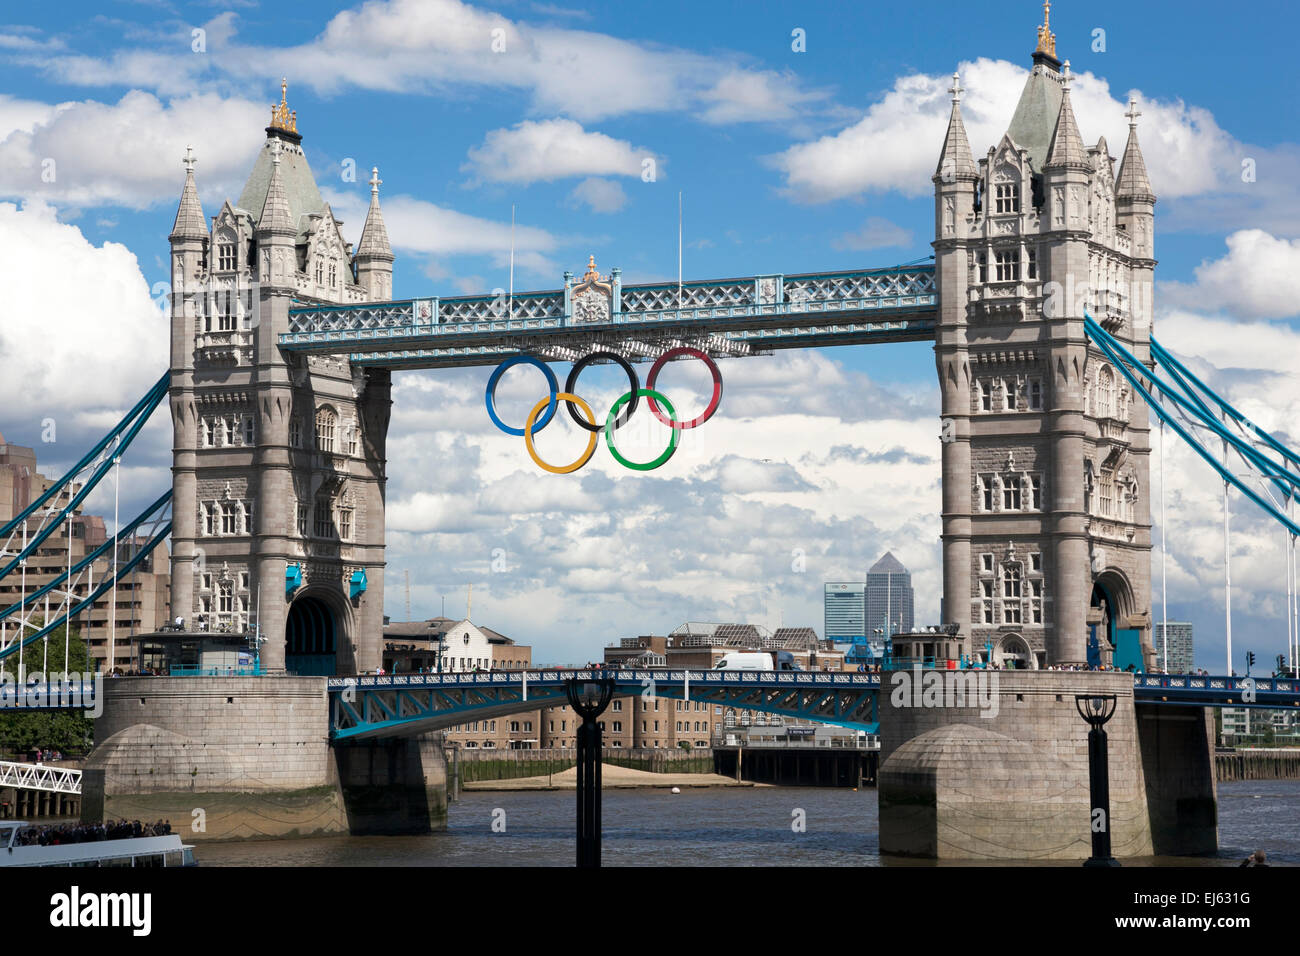 11 juillet 2012 - Les anneaux olympiques suspendu du bras de London Tower Bridge célébrant les jeux de 2012, Londres, Angleterre Banque D'Images